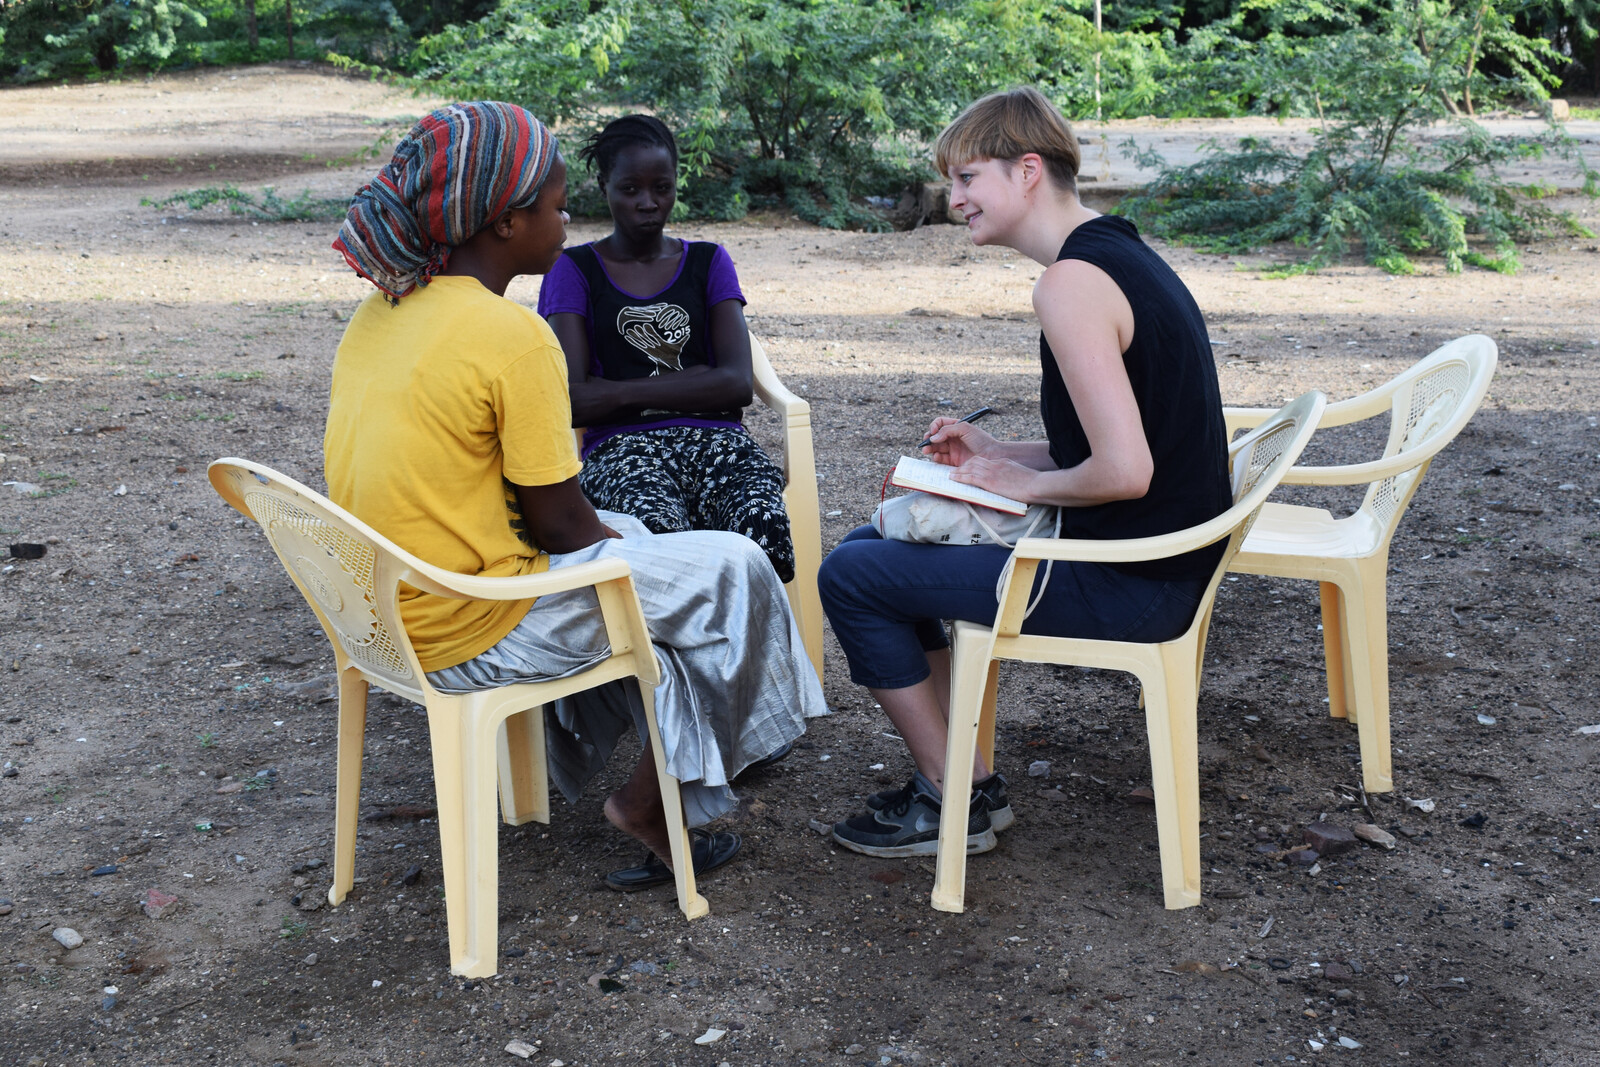 Johanna Sagmeister im Gespräch mit minderjährigen Müttern, die in Kenia einen Computer-Kurs besuchen.